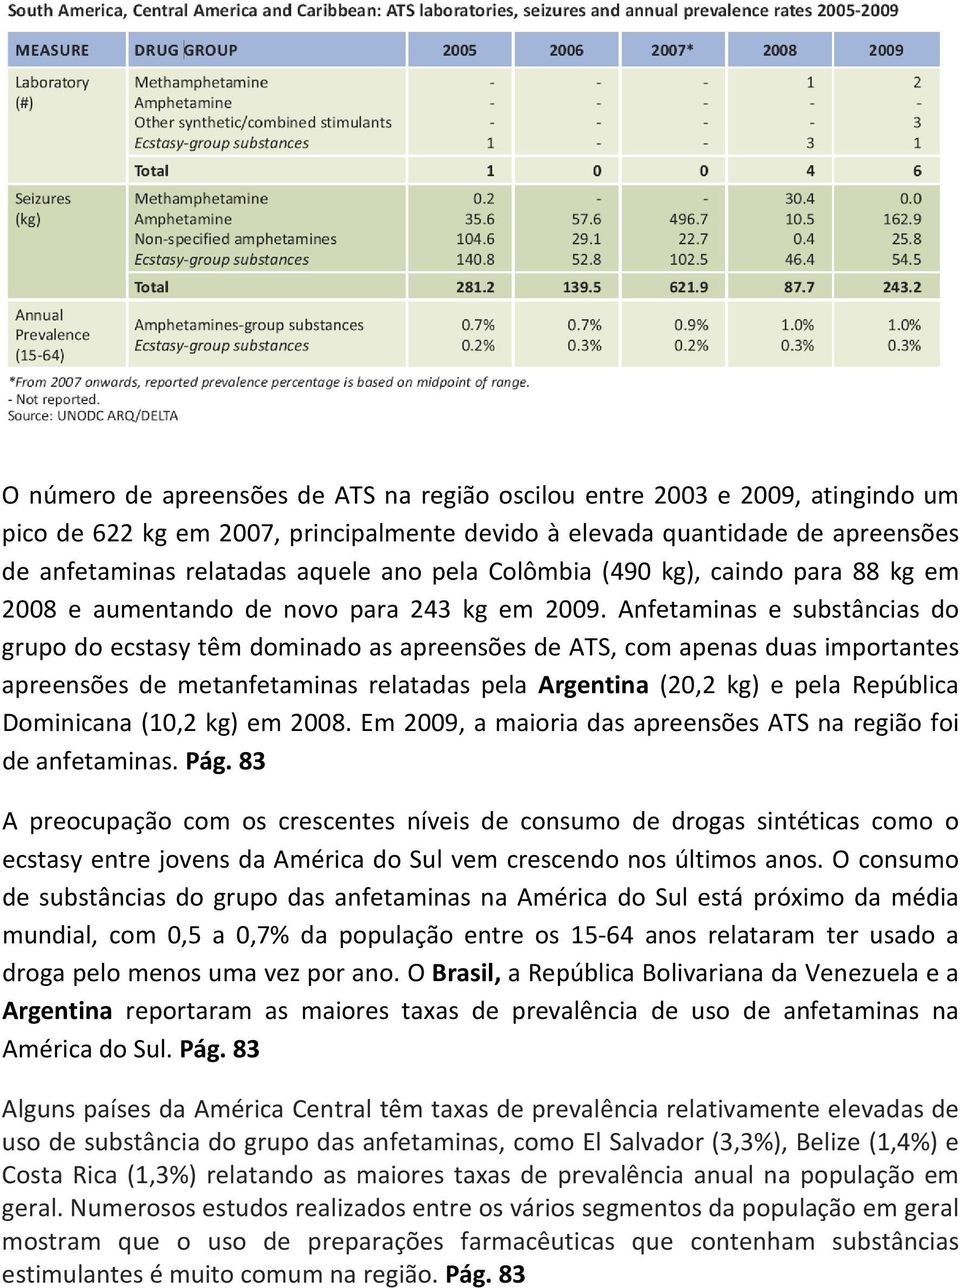 Anfetaminas e substâncias do grupo do ecstasy têm dominado as apreensões de ATS, com apenas duas importantes apreensões de metanfetaminas relatadas pela Argentina (20,2 kg) e pela República